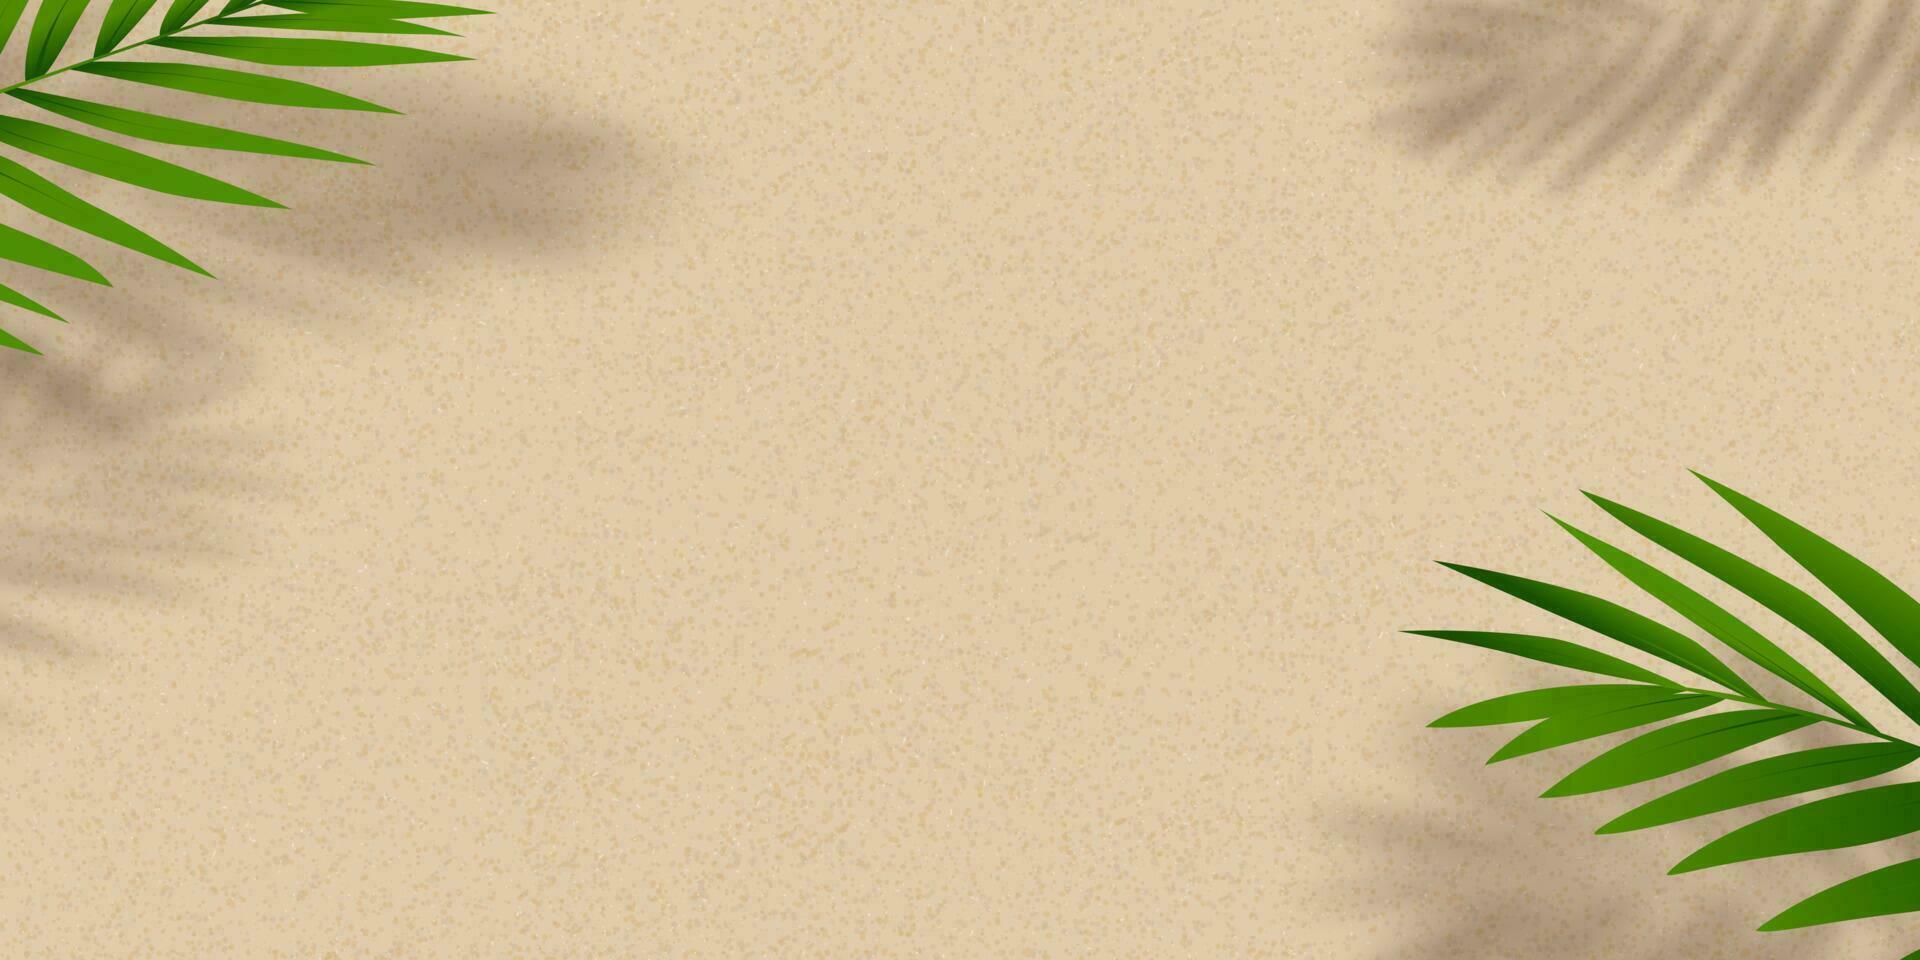 Sandbeschaffenheitshintergrund mit Palmblattschattenbild, Kokosnussblattschatten auf braunem sandigem Strand, Vektordraufsichtsandoberfläche, Hintergrundhintergrund breiter Horizont Wüstendüne für Sommerproduktpräsentation vektor